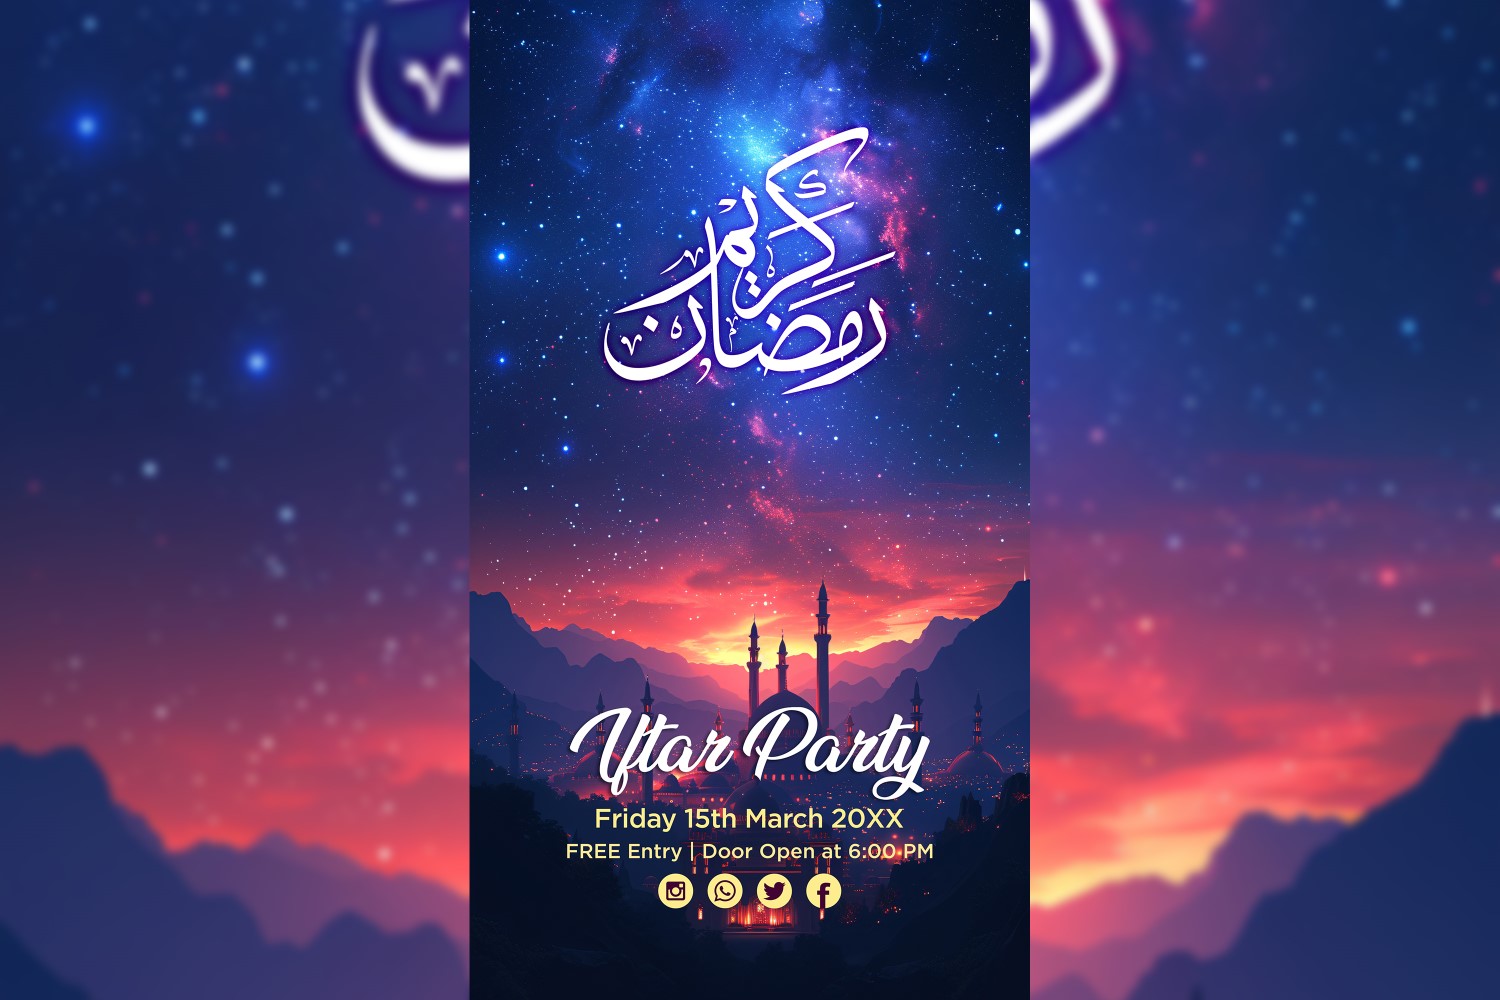 Ramadan Iftar Party Poster Design Template 03